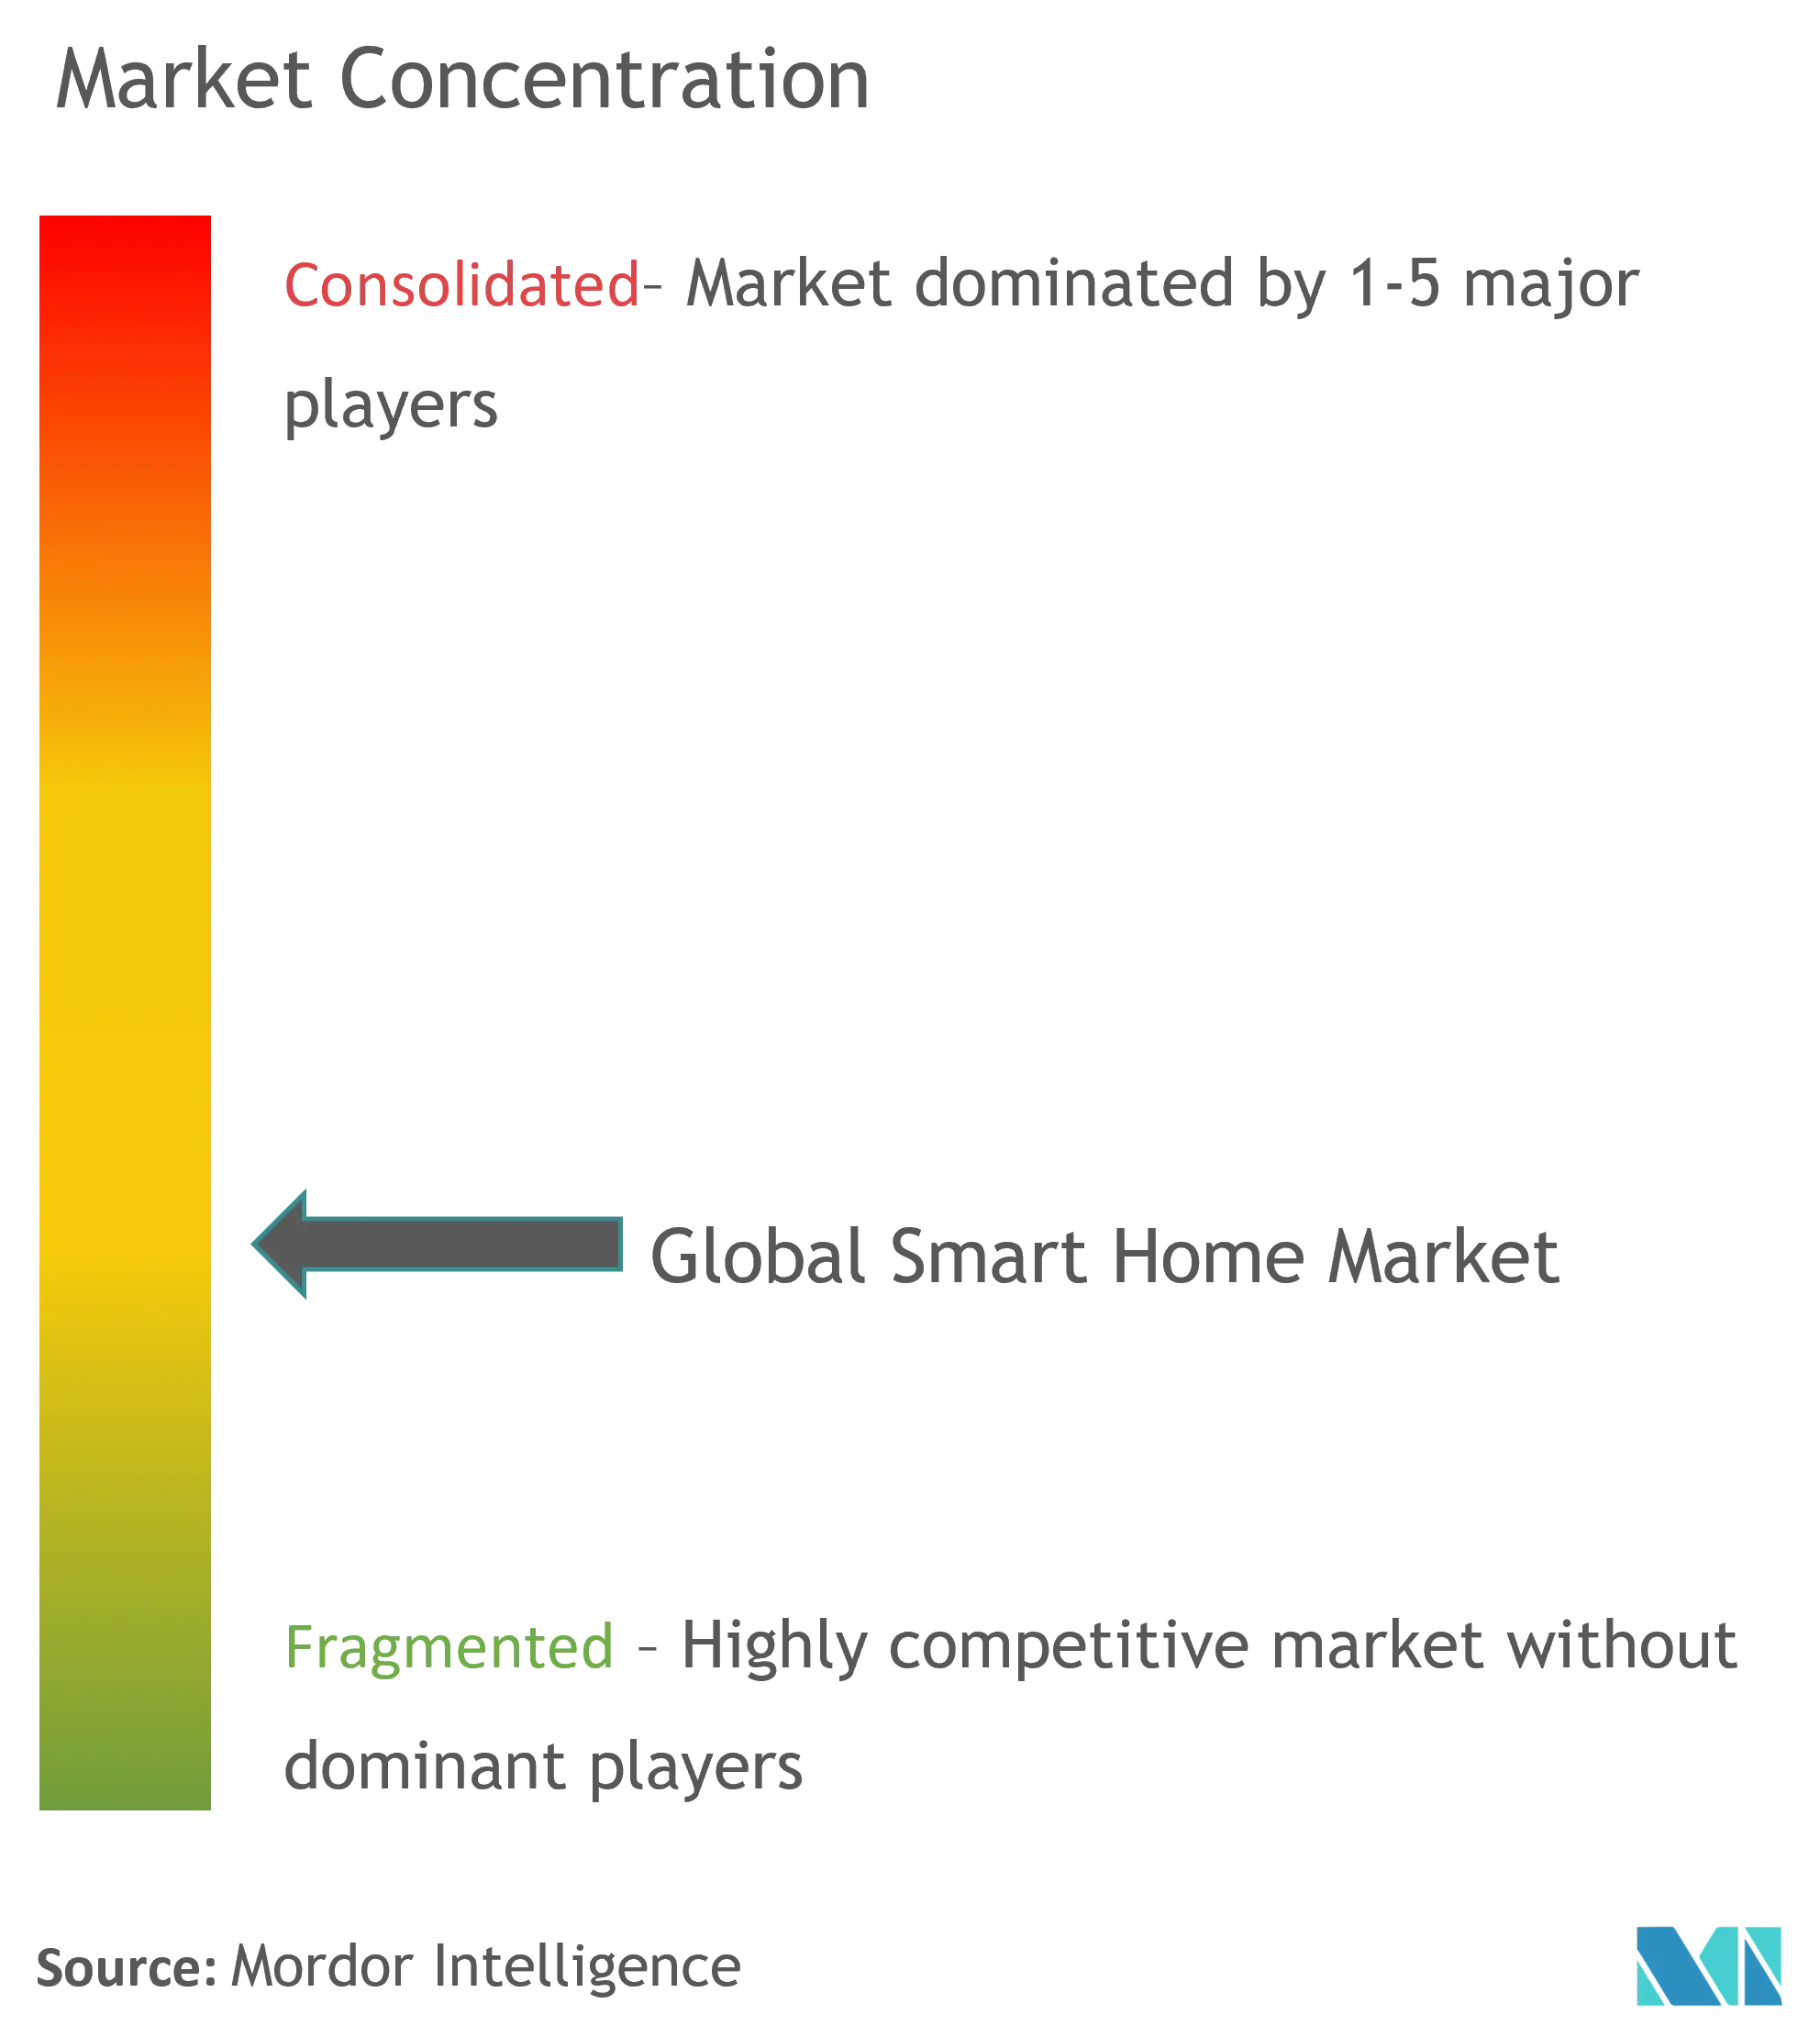 Global Smart Homes Market